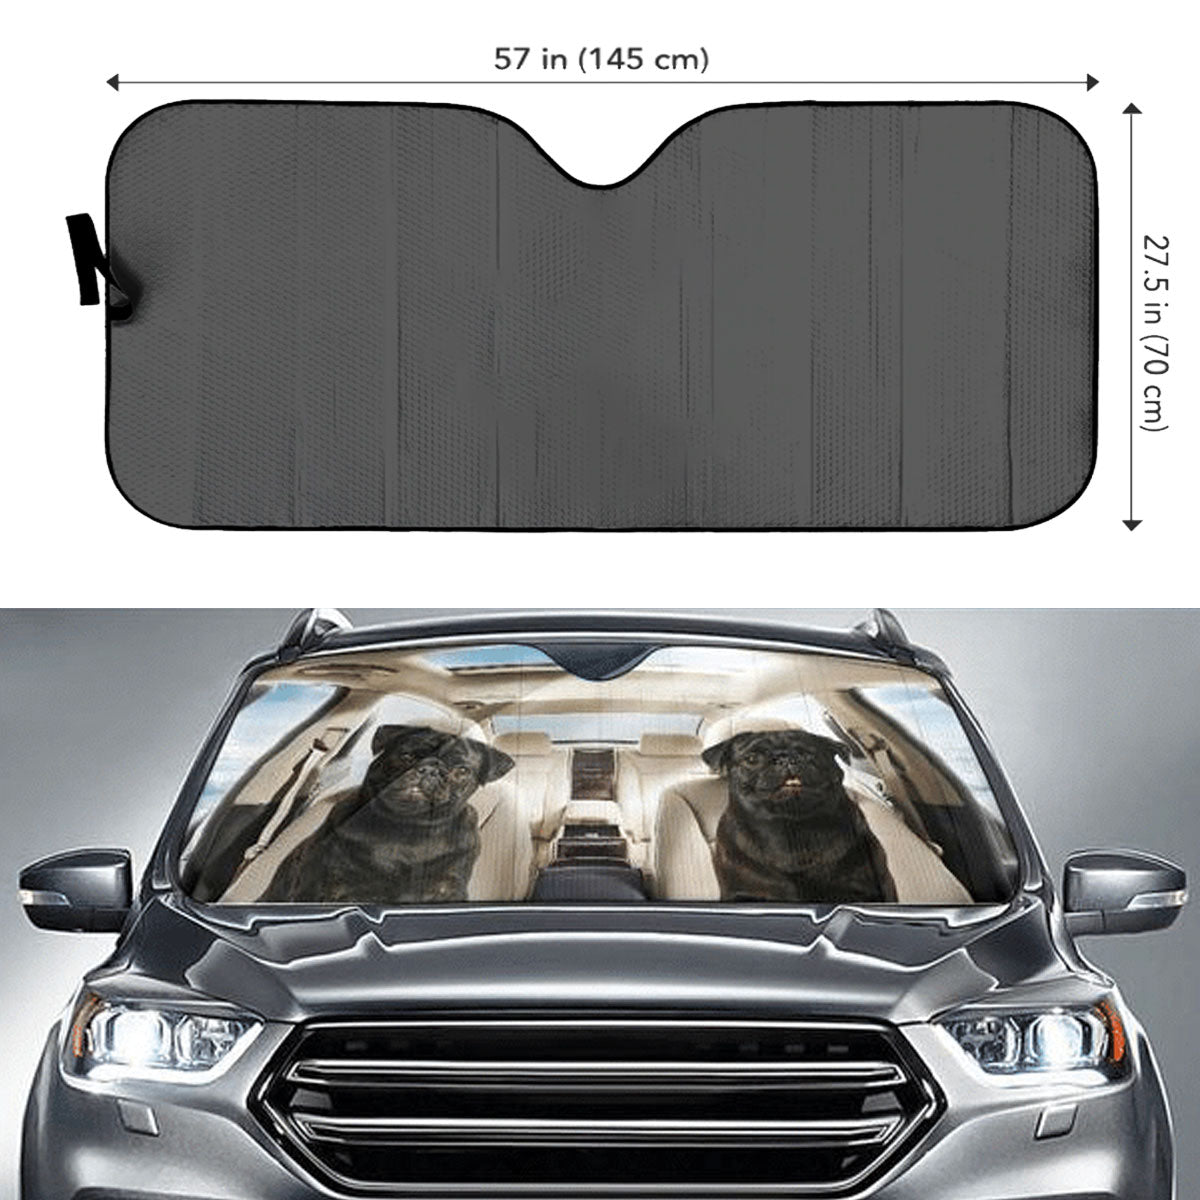 Custom Windshield Sun Shade for Car Cute Black Pug Dog Driver Car Sun Shade - Car Accessory